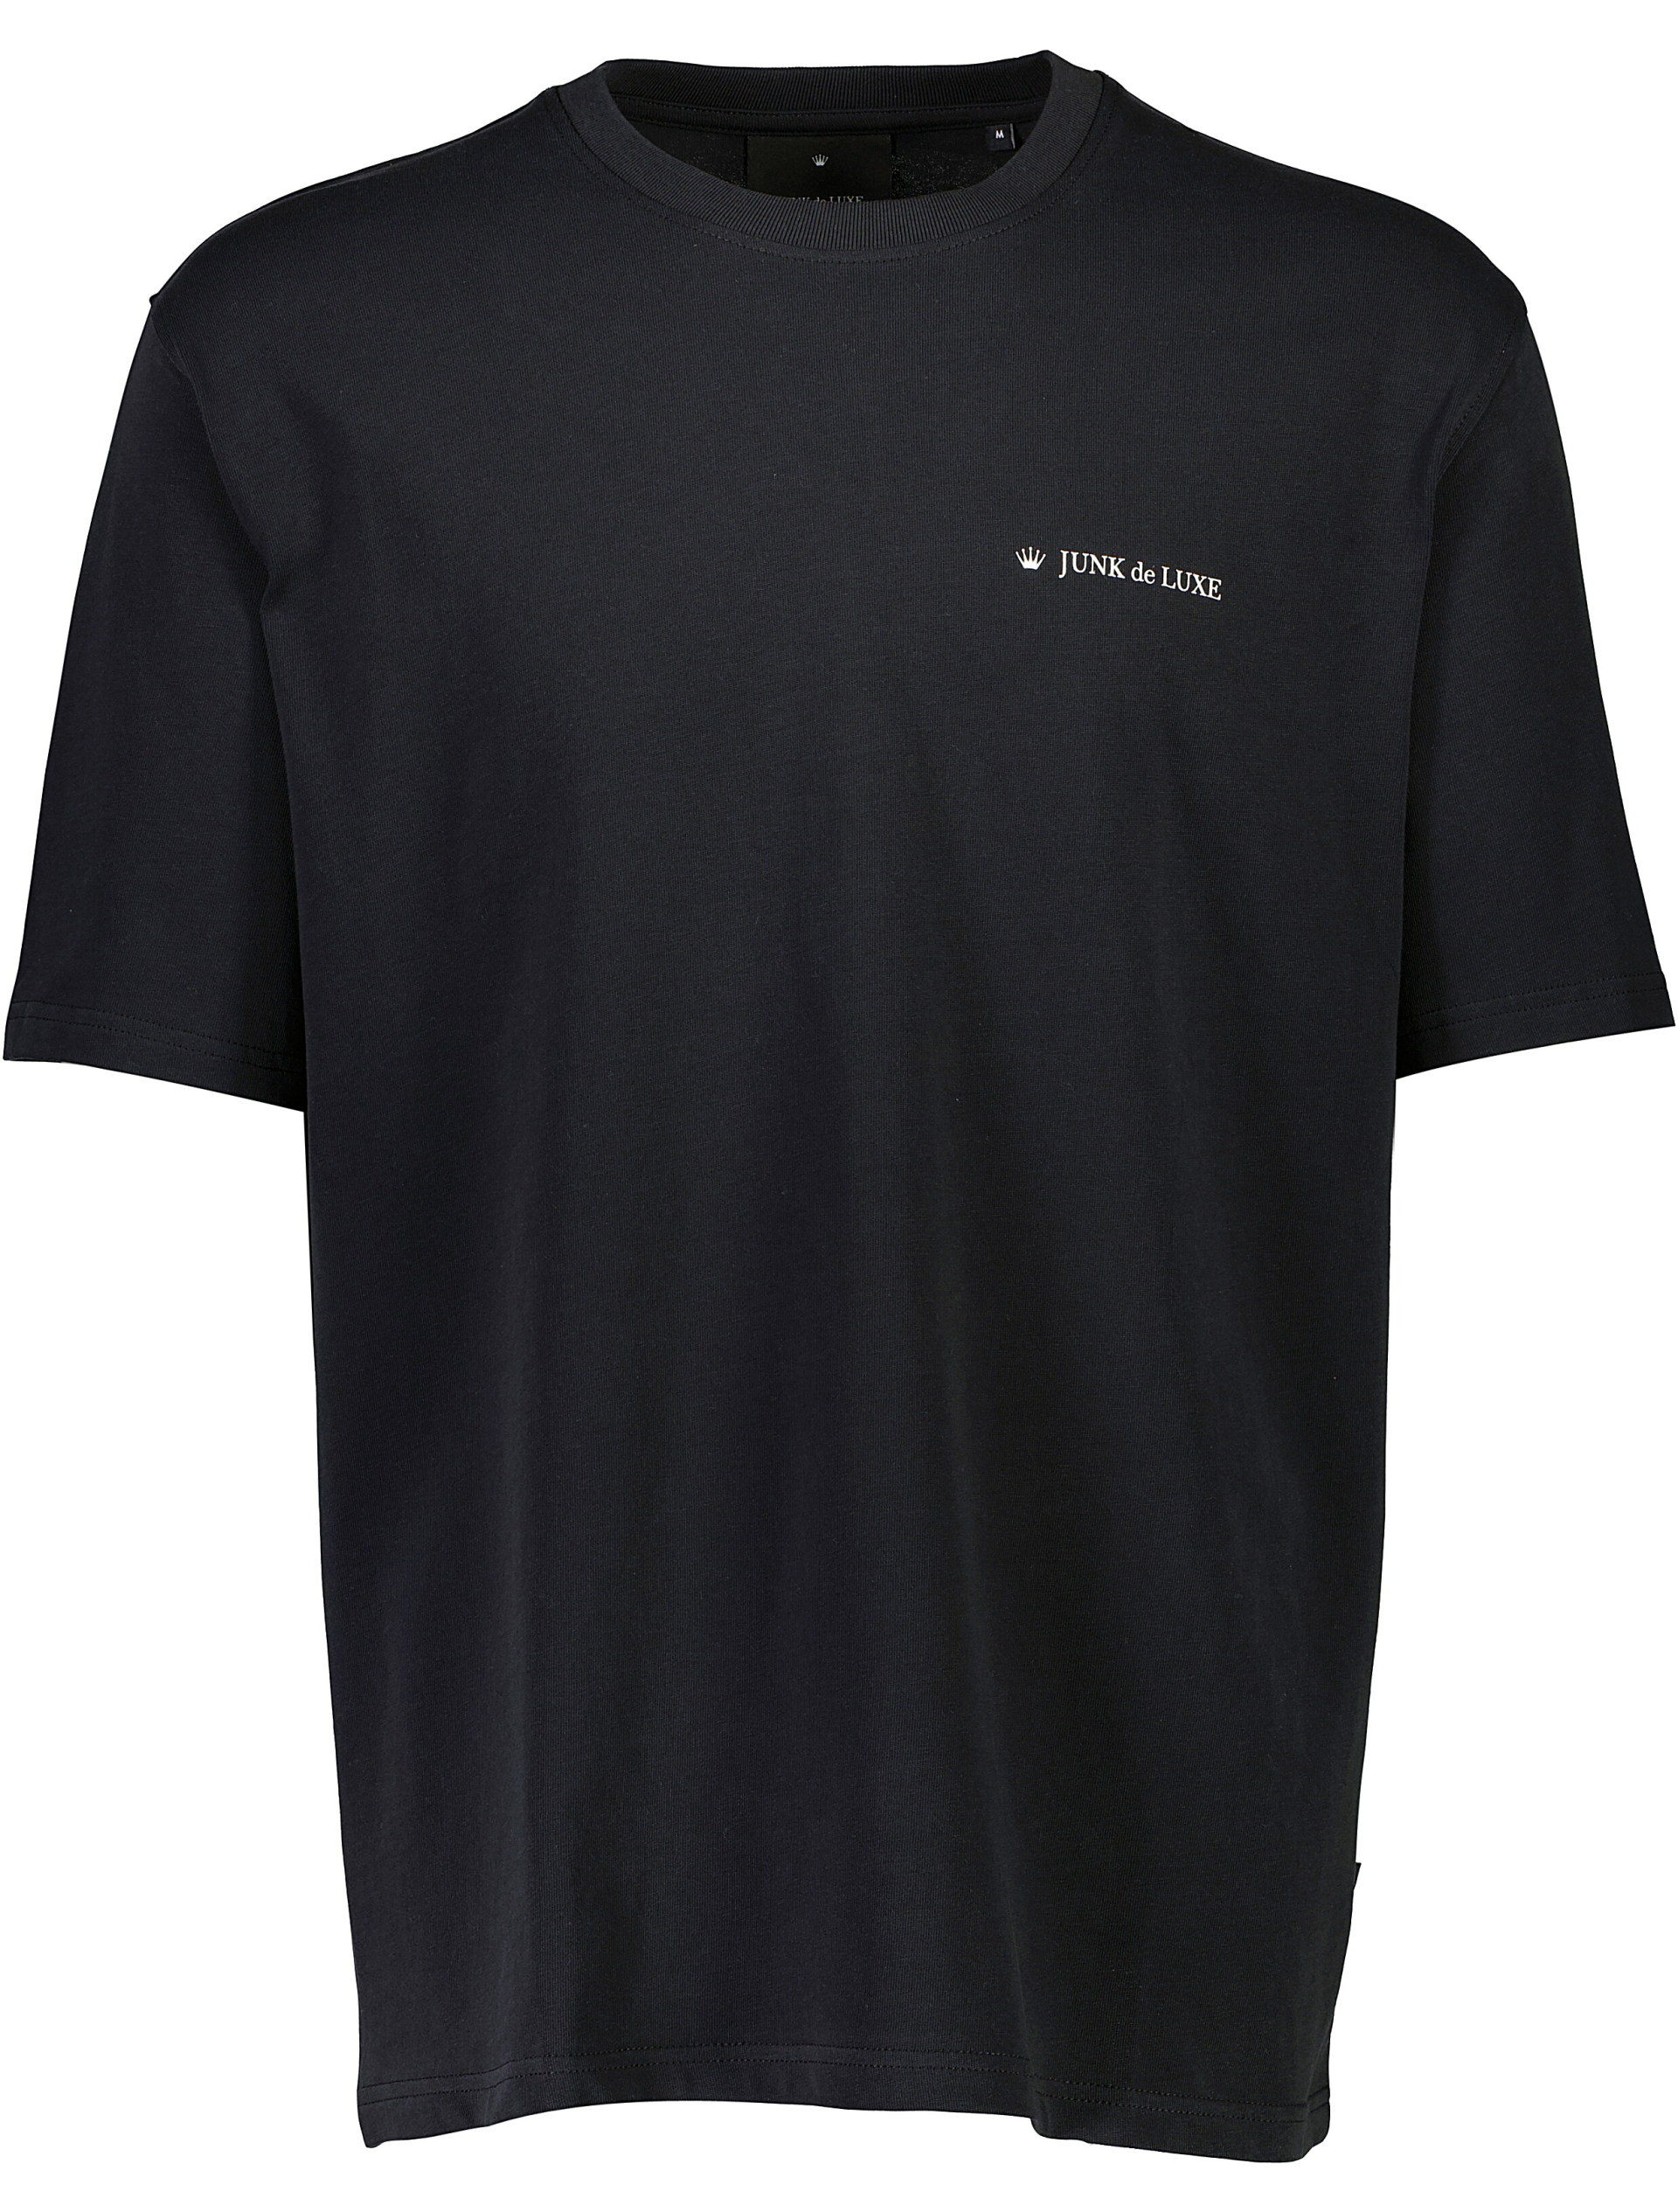 Junk de Luxe T-shirt sort / black